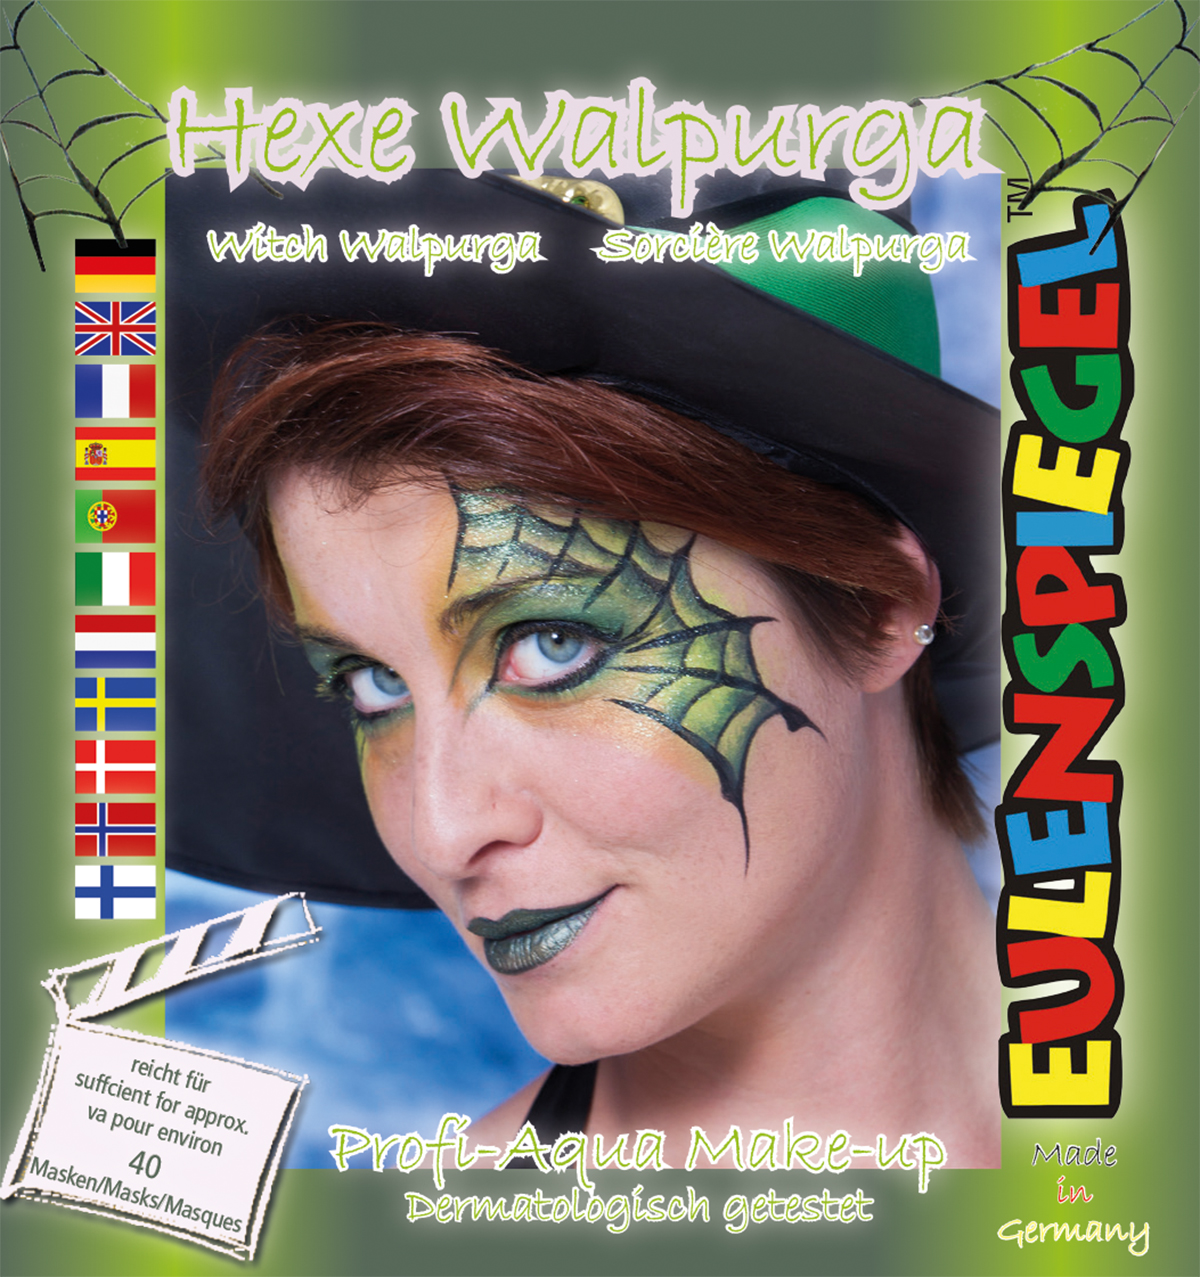 Motiv-Set Hexe Walpurga mit 4 Farben, Pinsel und Anleitung